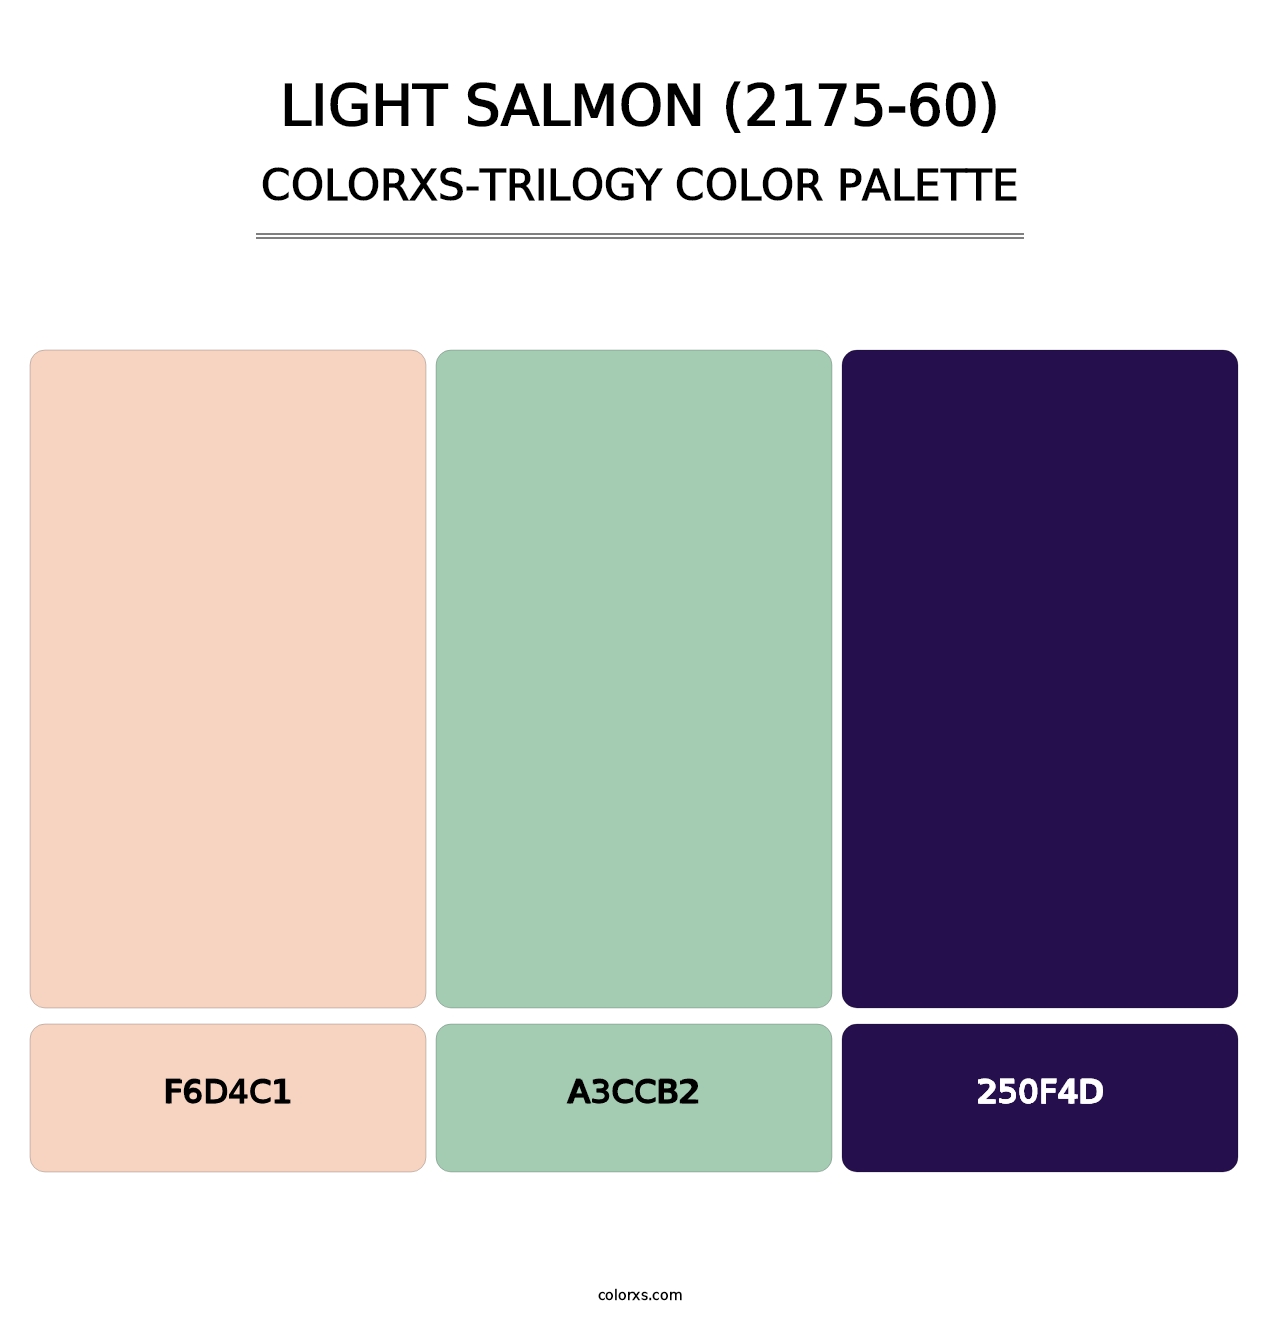 Light Salmon (2175-60) - Colorxs Trilogy Palette